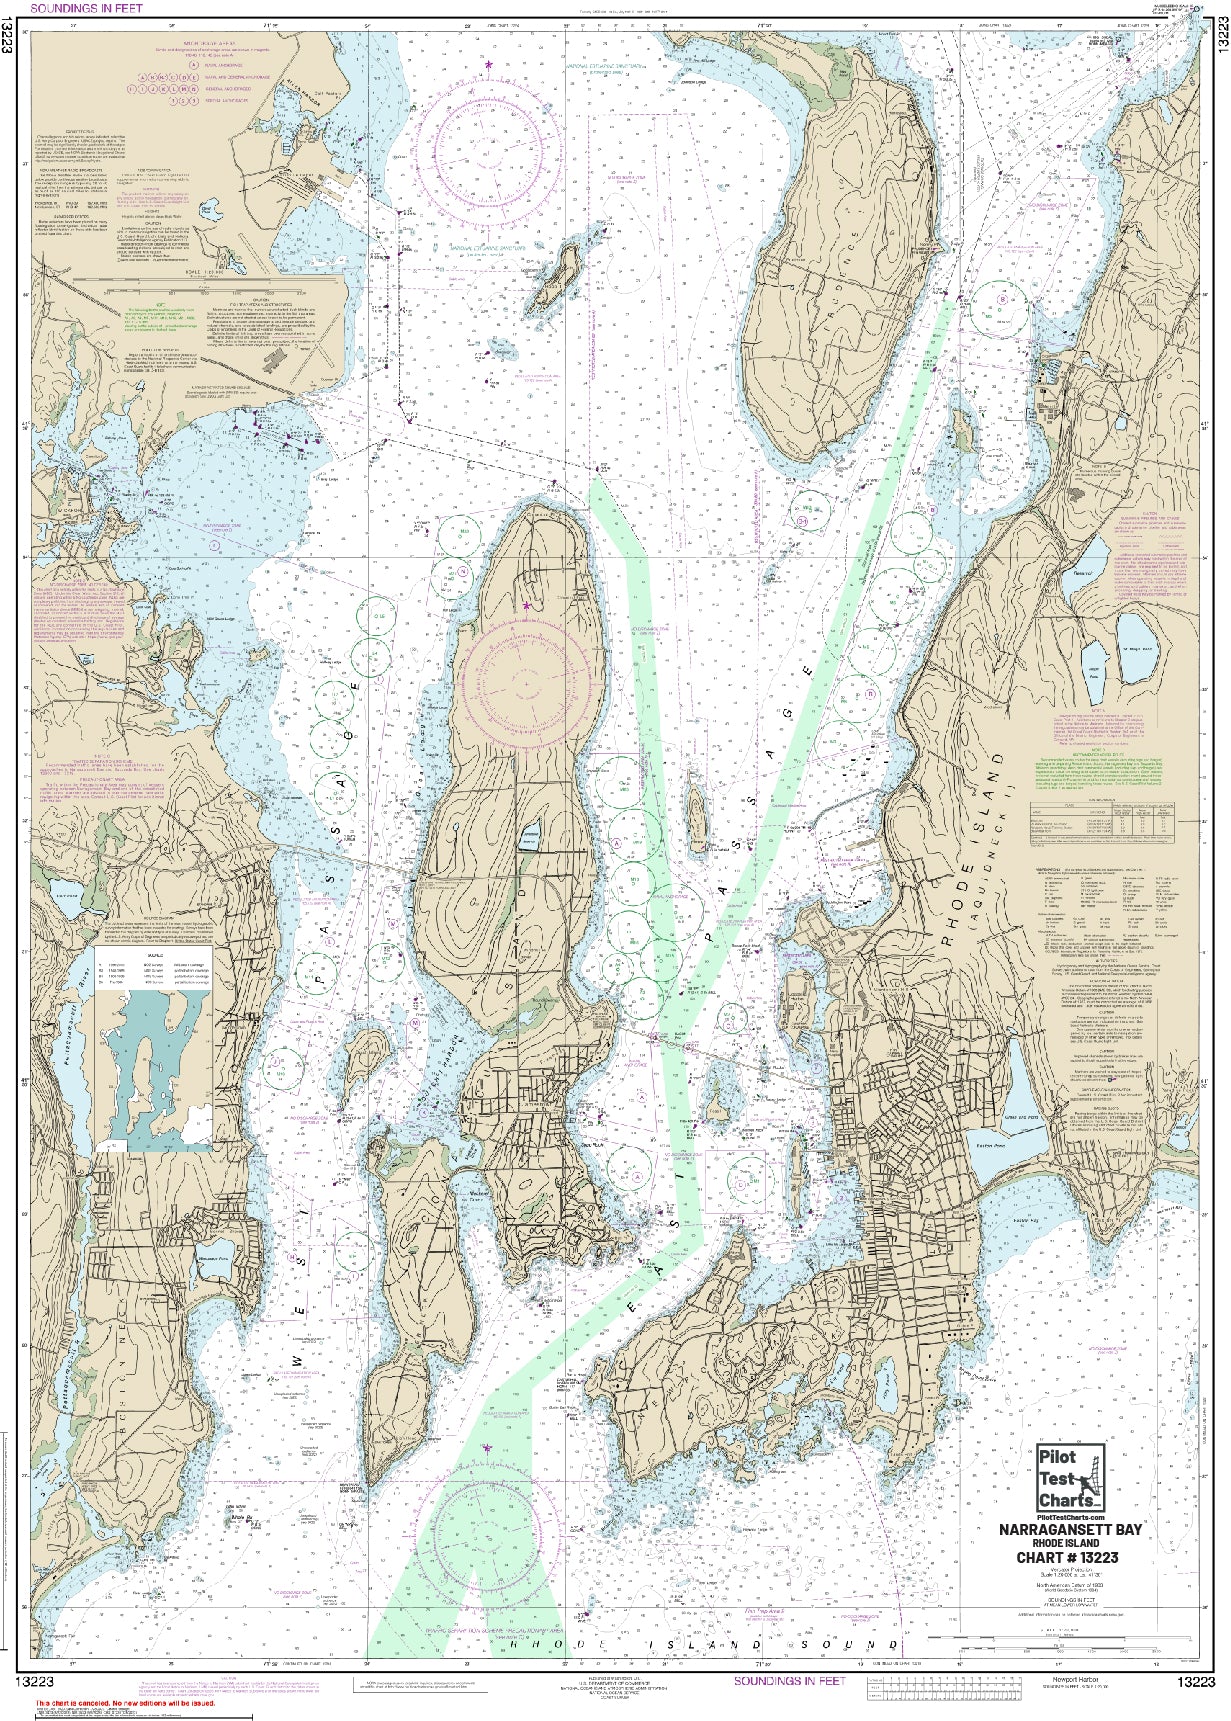 #13223 Narragansett Bay, Rhode Island Chart